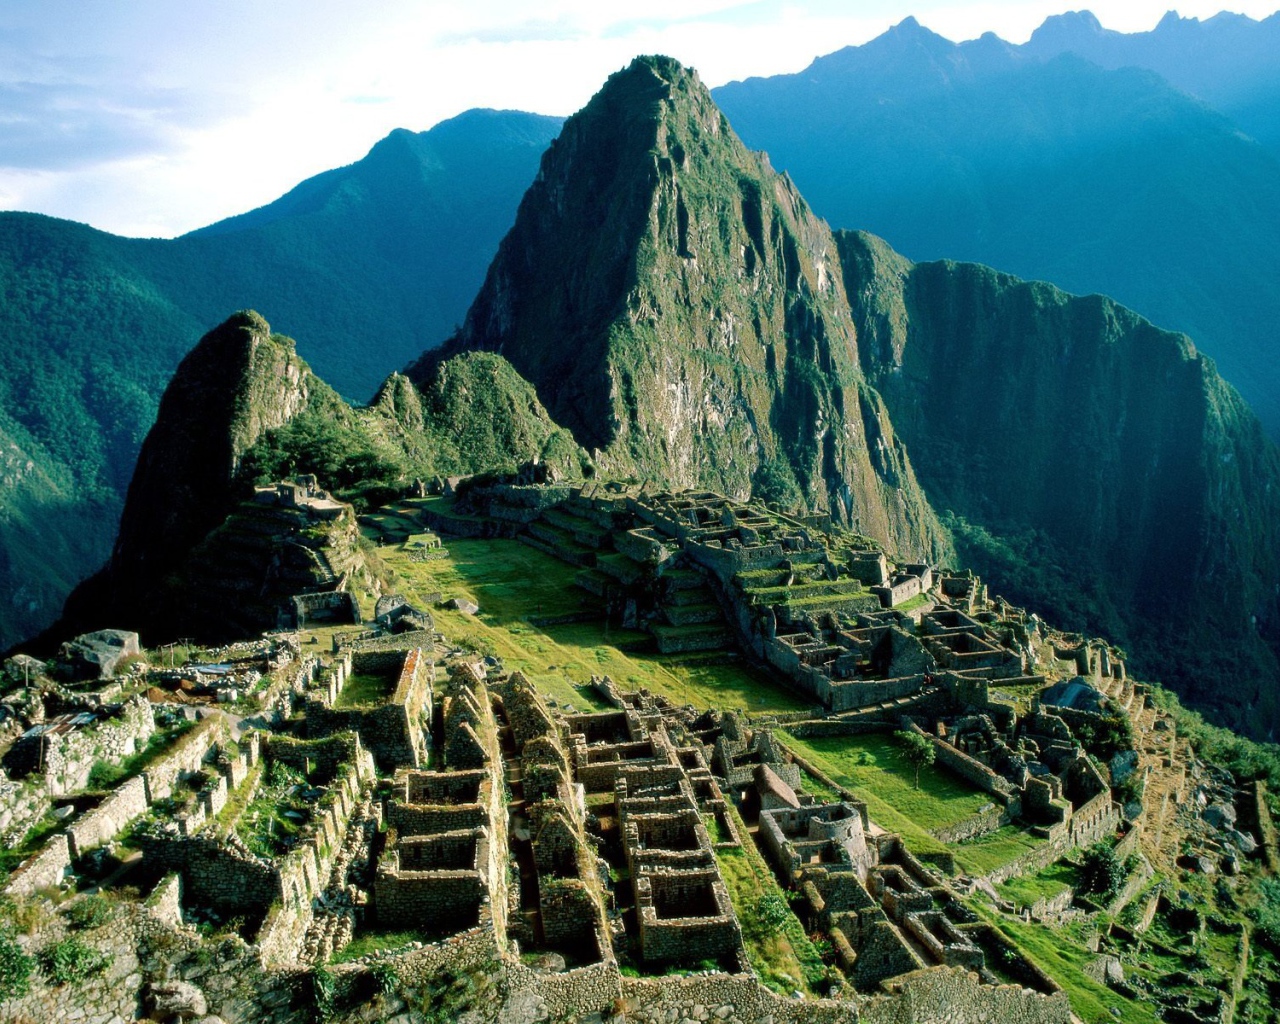 Популярное место в Перу